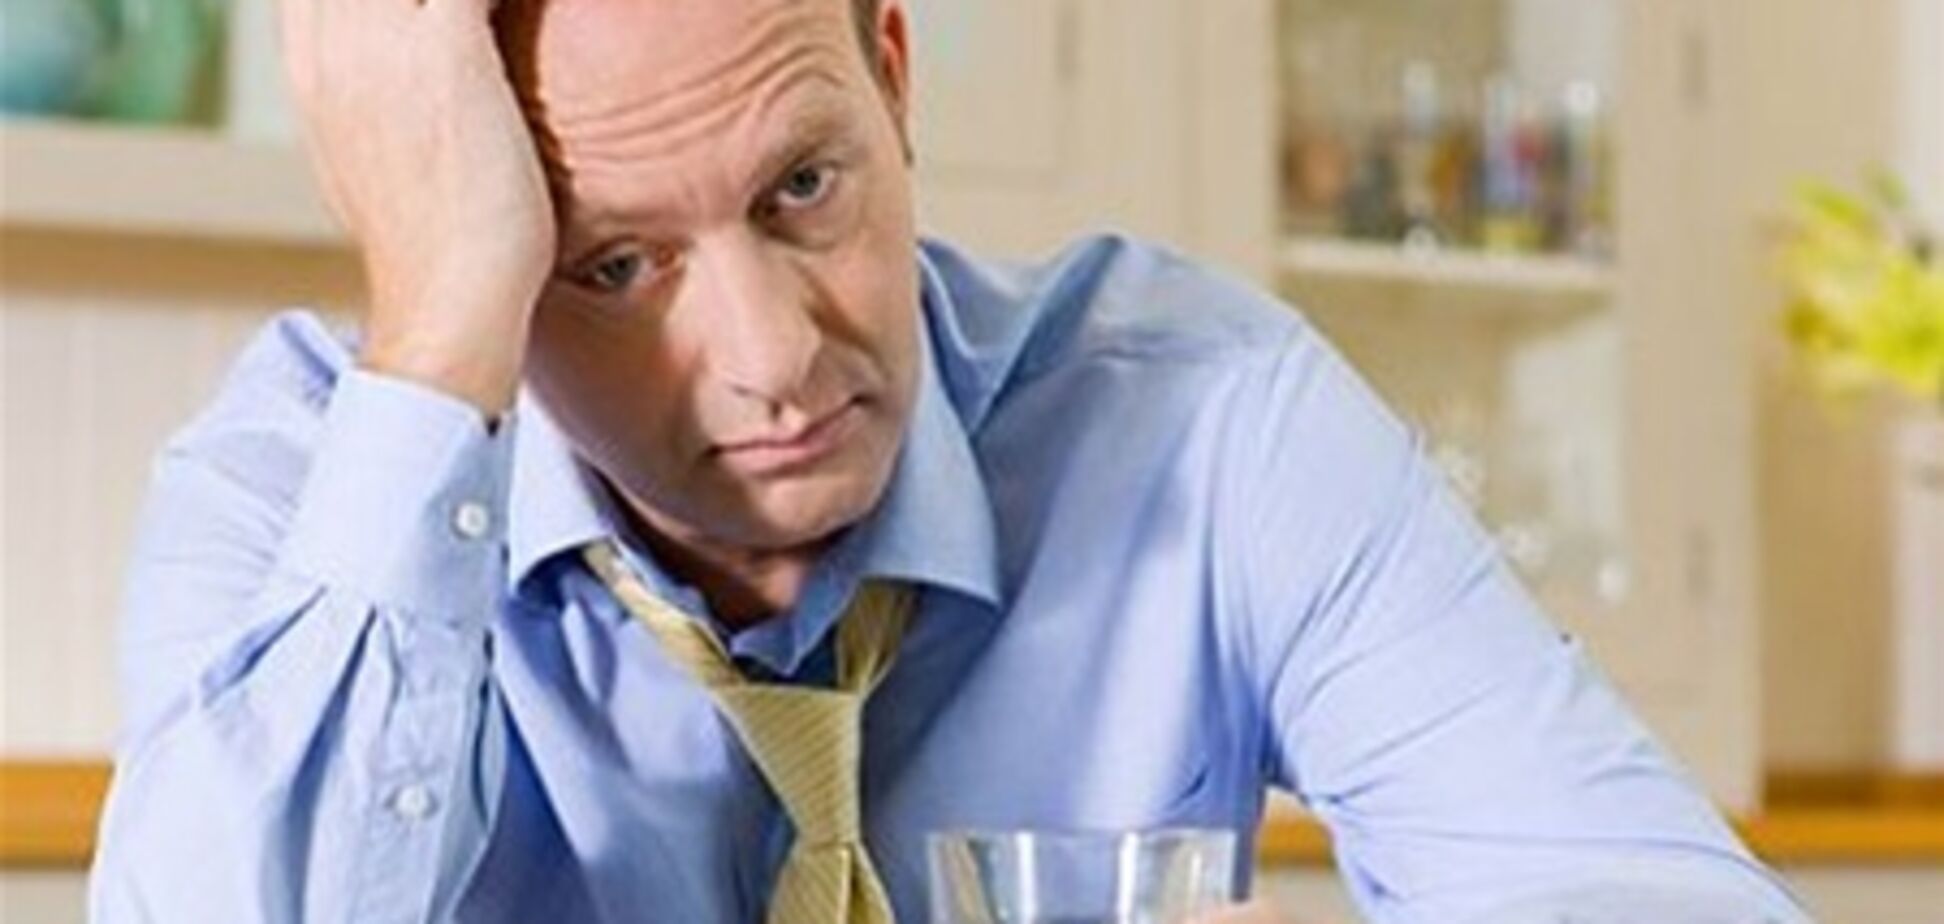 Большинство людей запивают рабочие стрессы алкоголем – опрос 